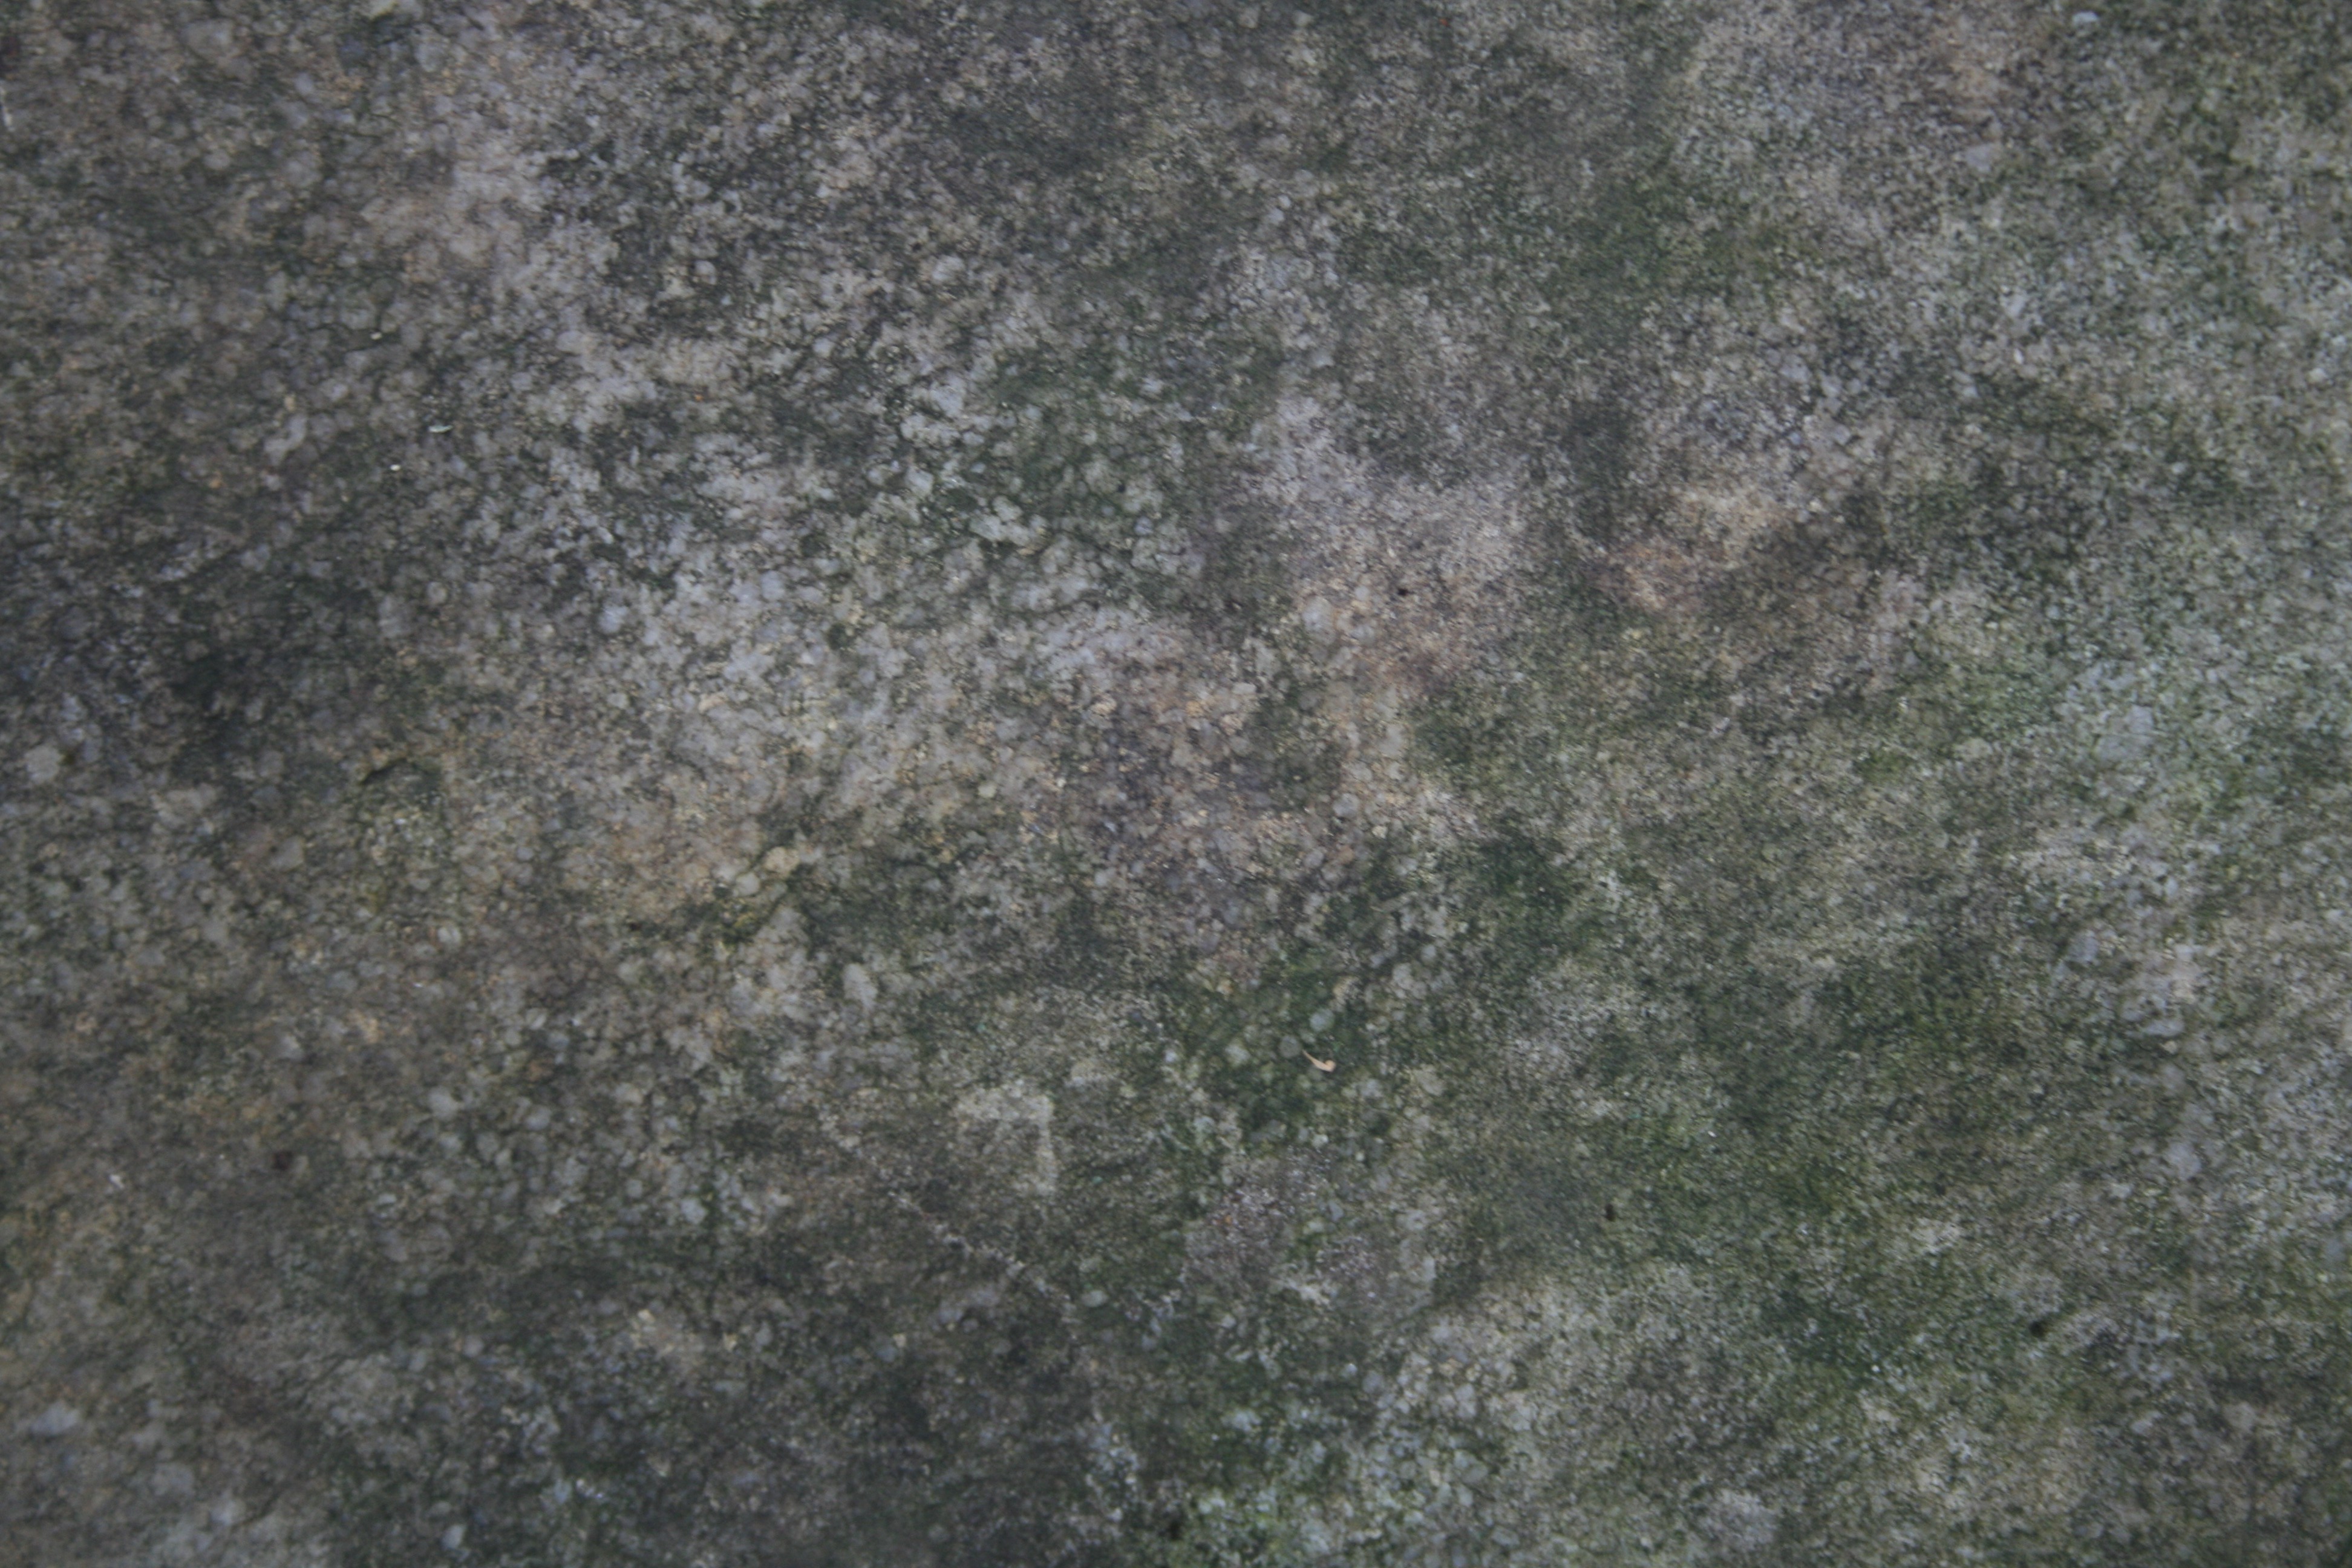 Mossy Rock Textures | Texturemate.com